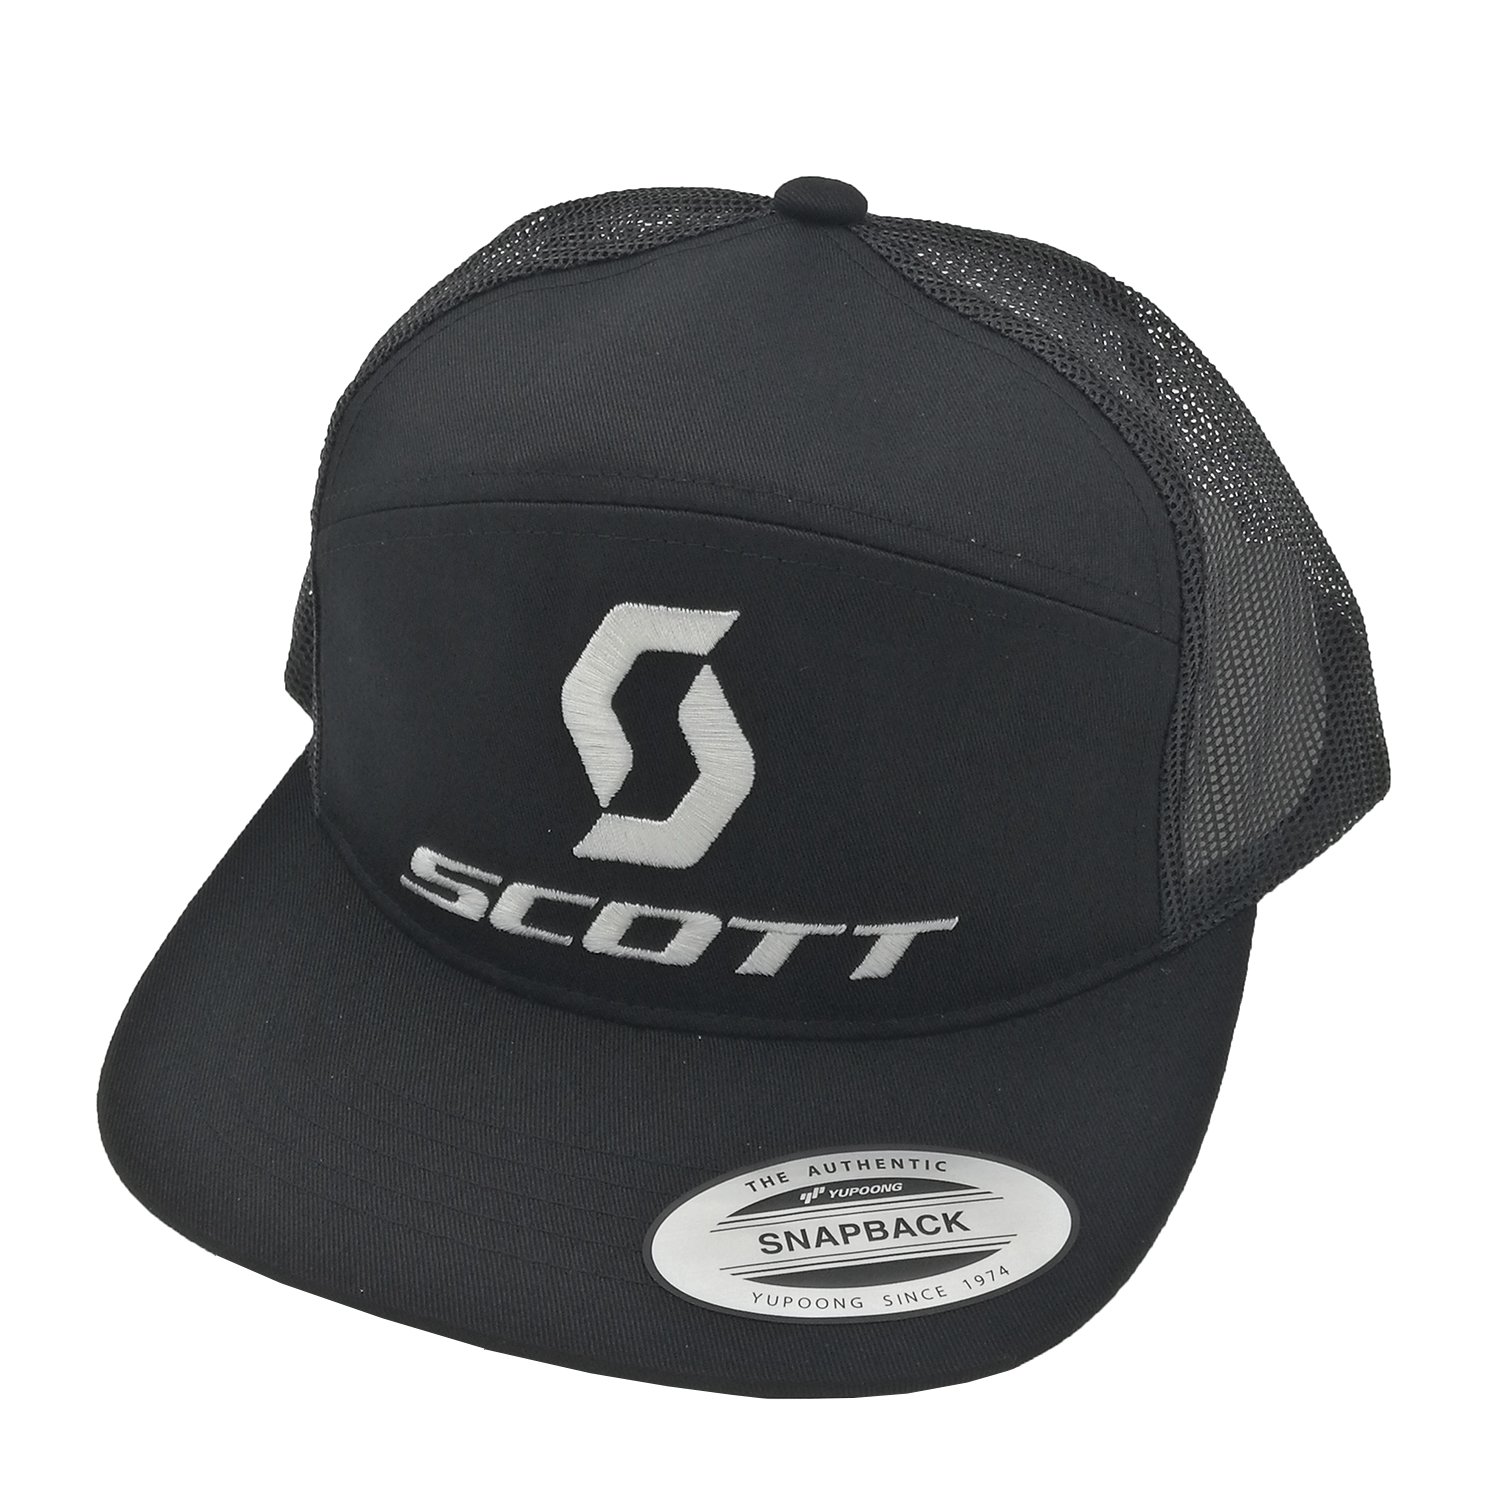 Бейсболки и кепки Кепка велосипедная Scott Snap back 10, black/white, 238137